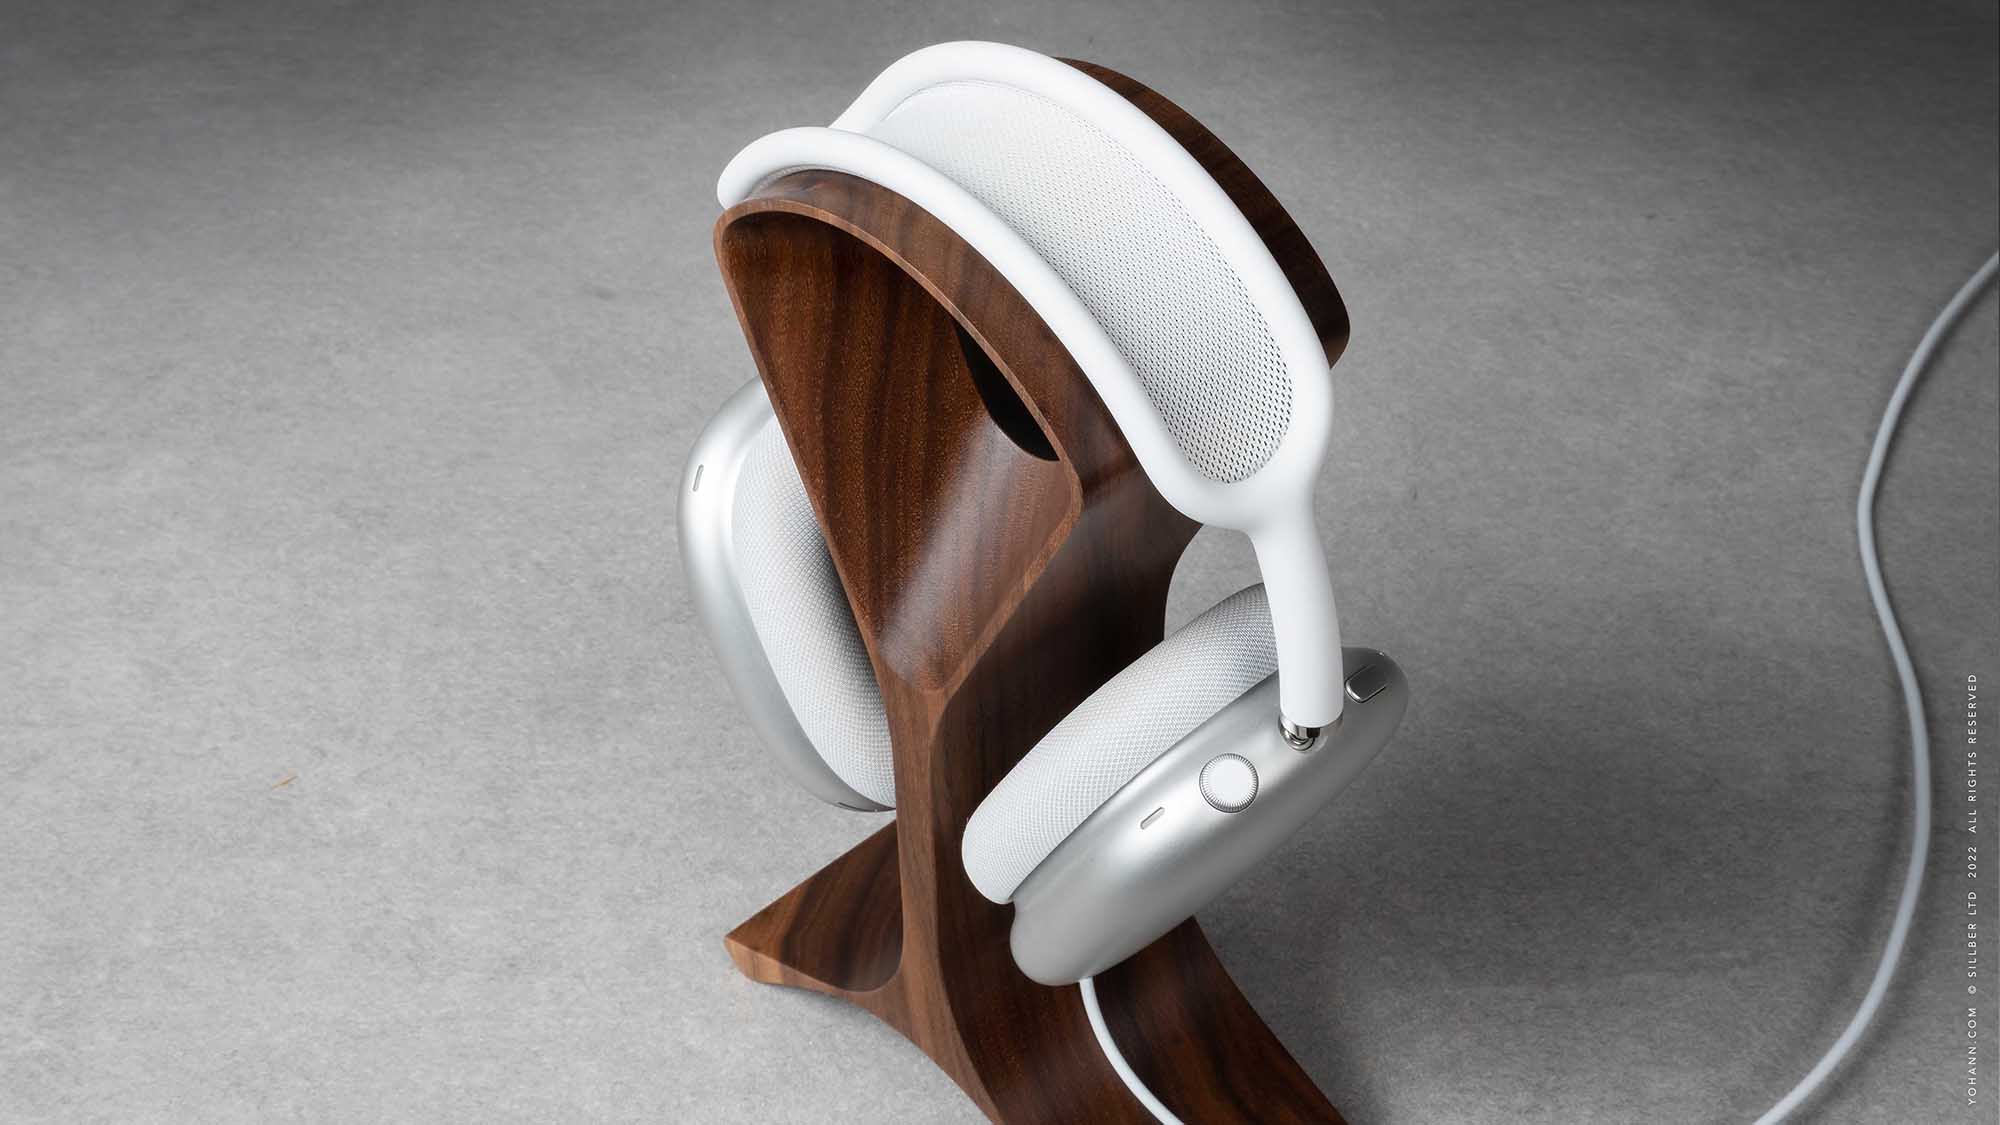 Wood Headphone Stand Multiple Headphones Stand Headphone Station